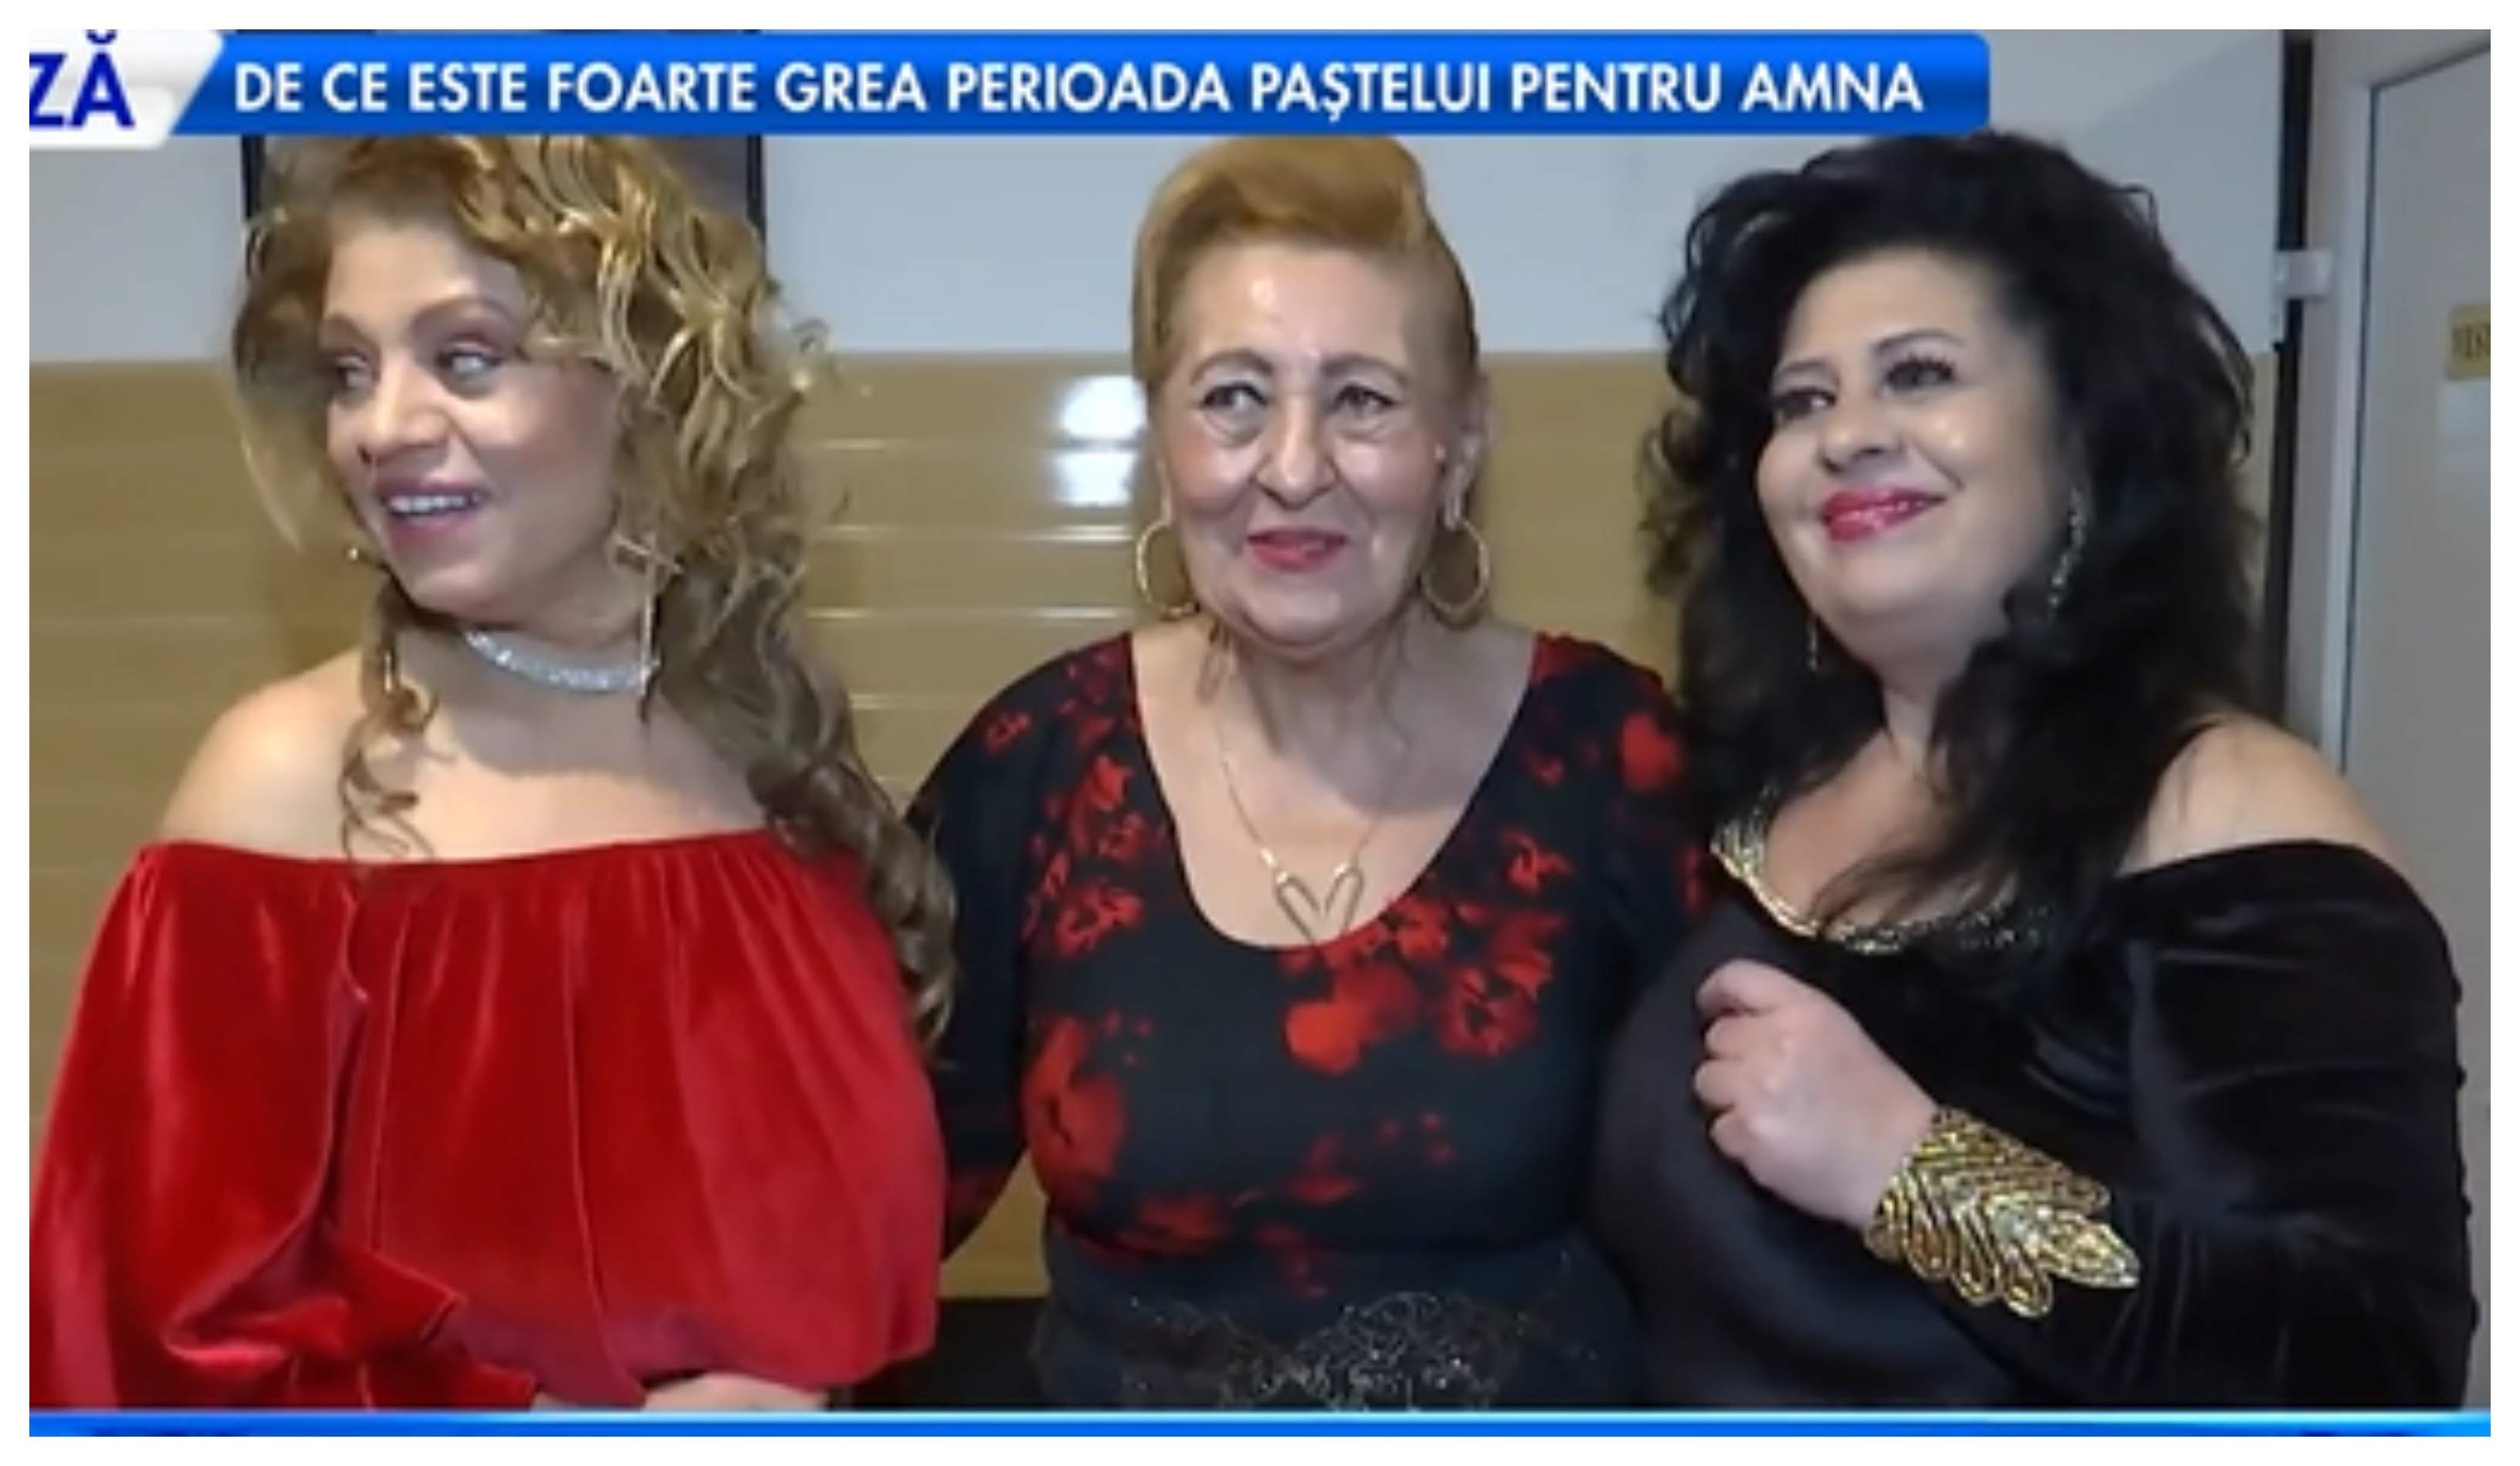 Mioara Lincan, alături de fiicele sale pe scenă. Cele trei s-au reunit după mai mulți ani: ”Asta e plăcerea mea” / VIDEO